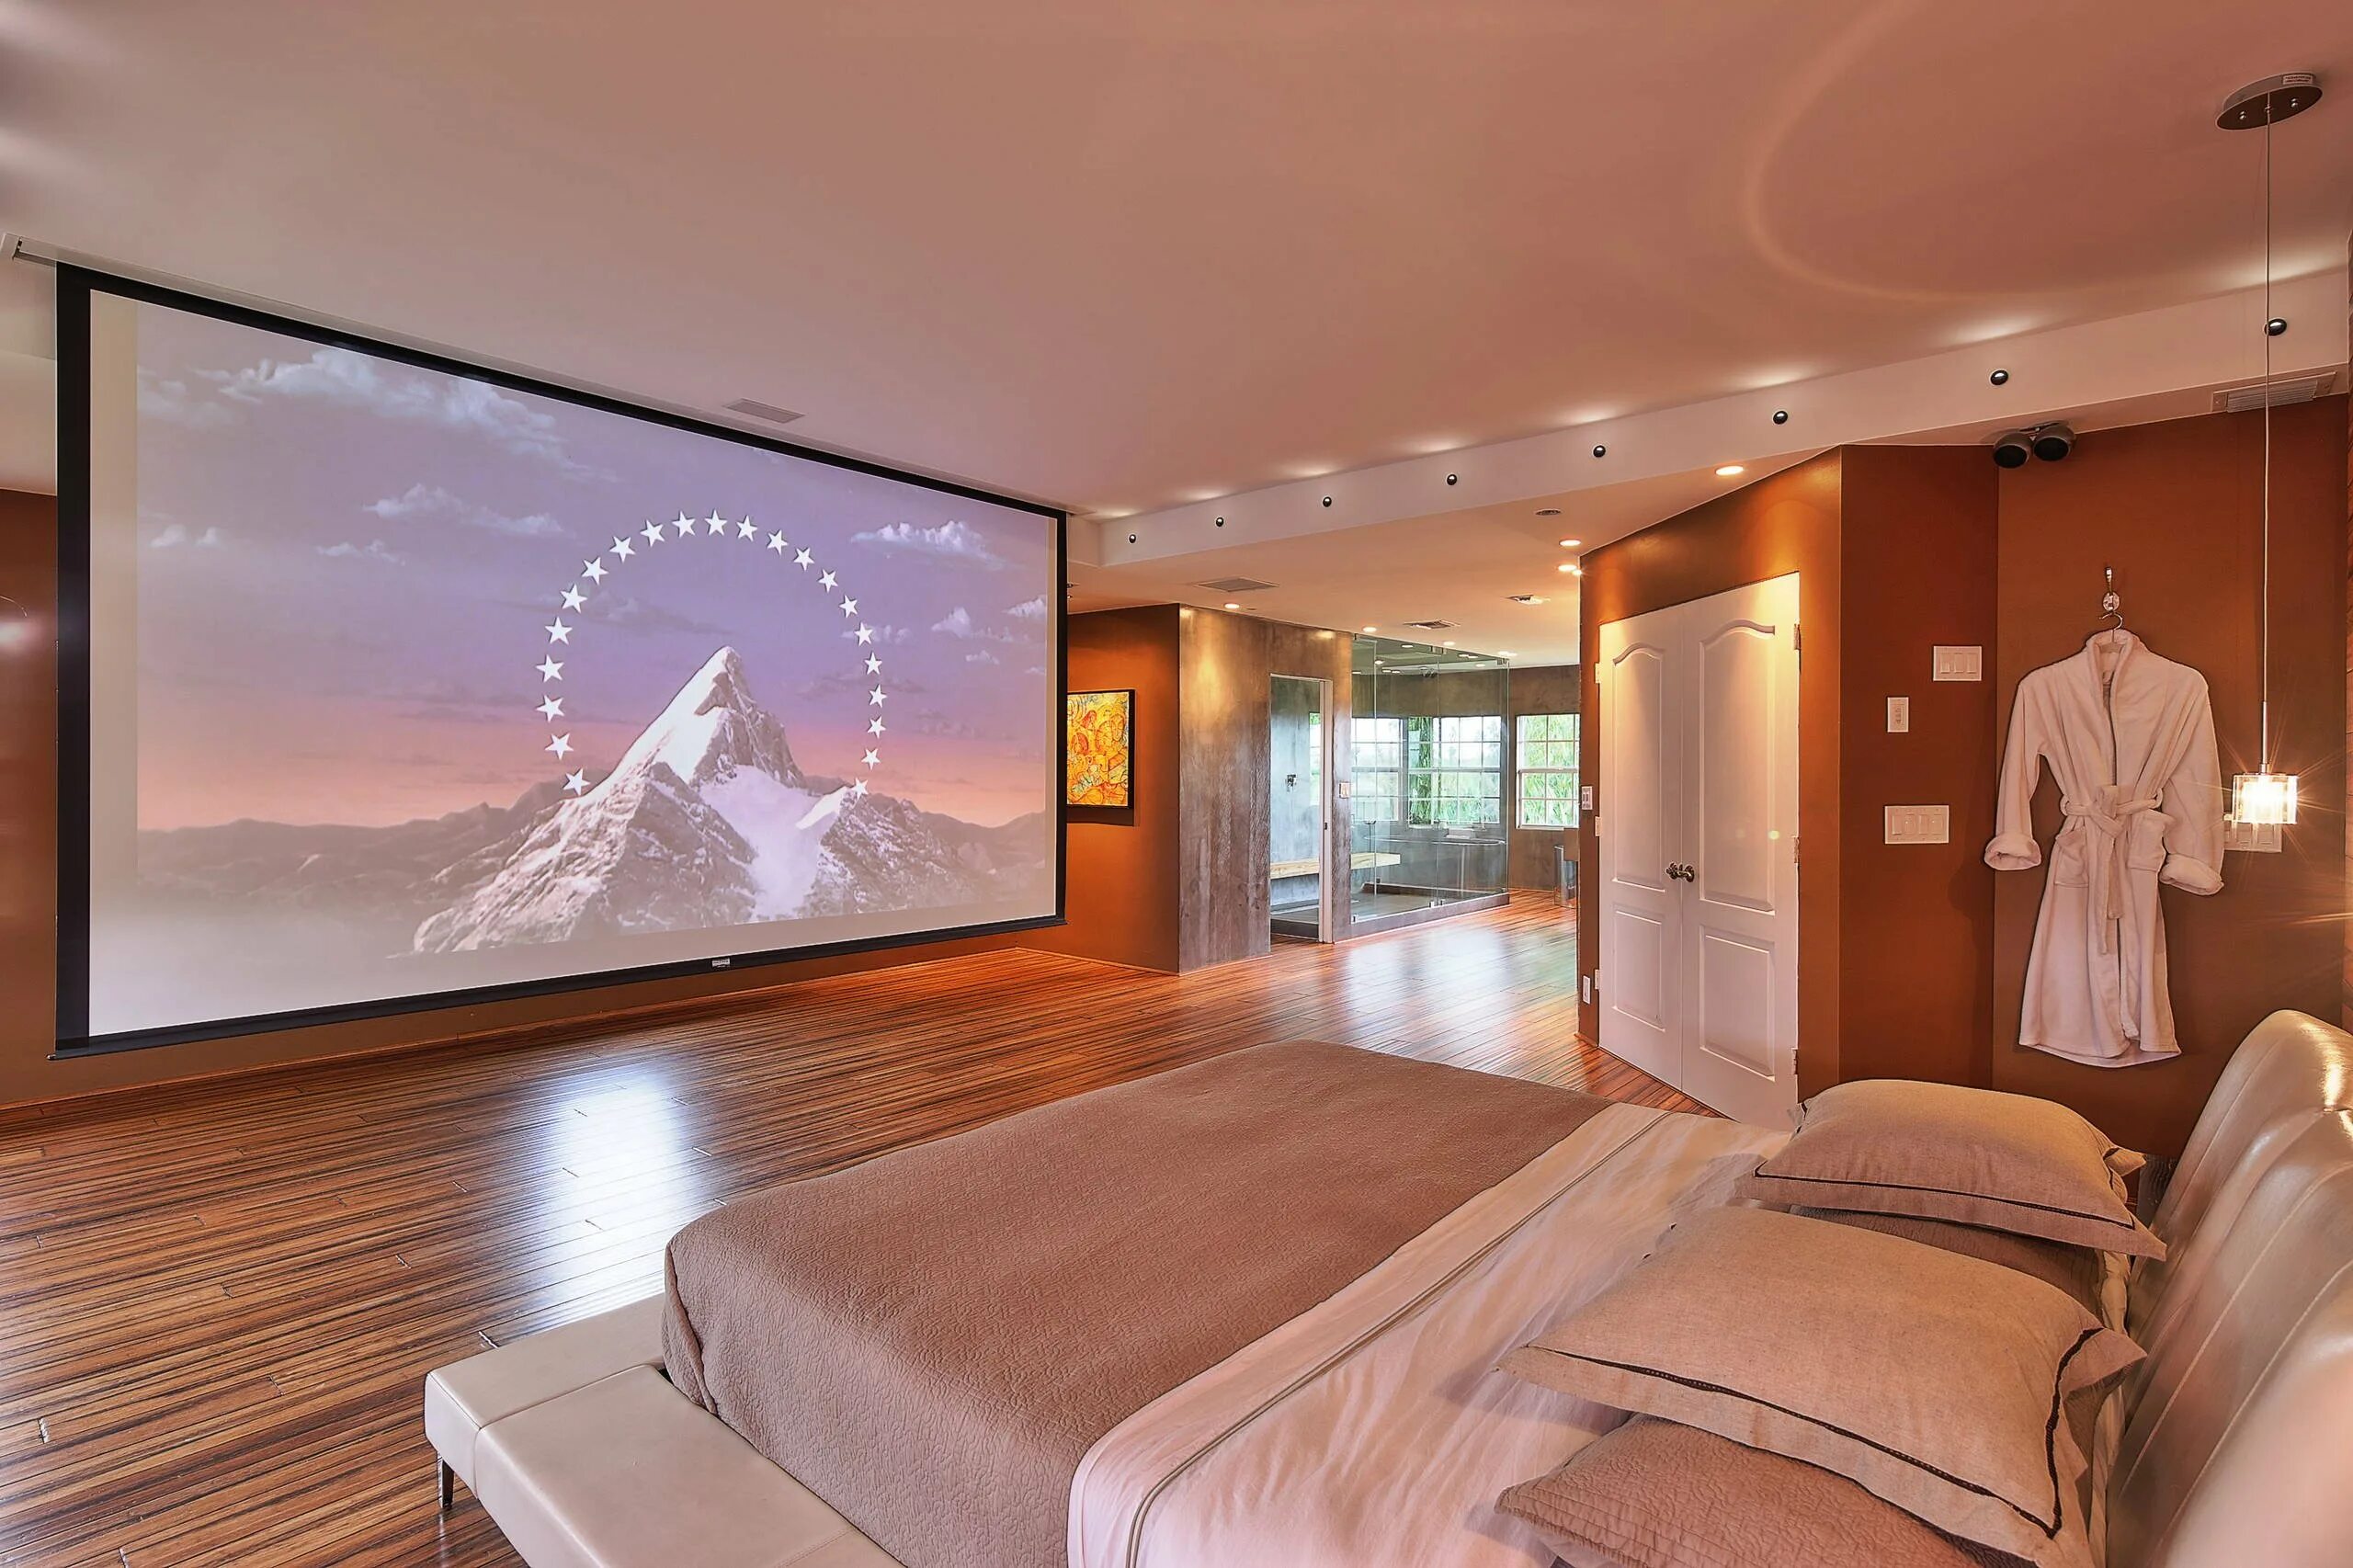 Телевизор в спальне. Спальня мечты. Красивая комната. Проектор в спальне. My room tv